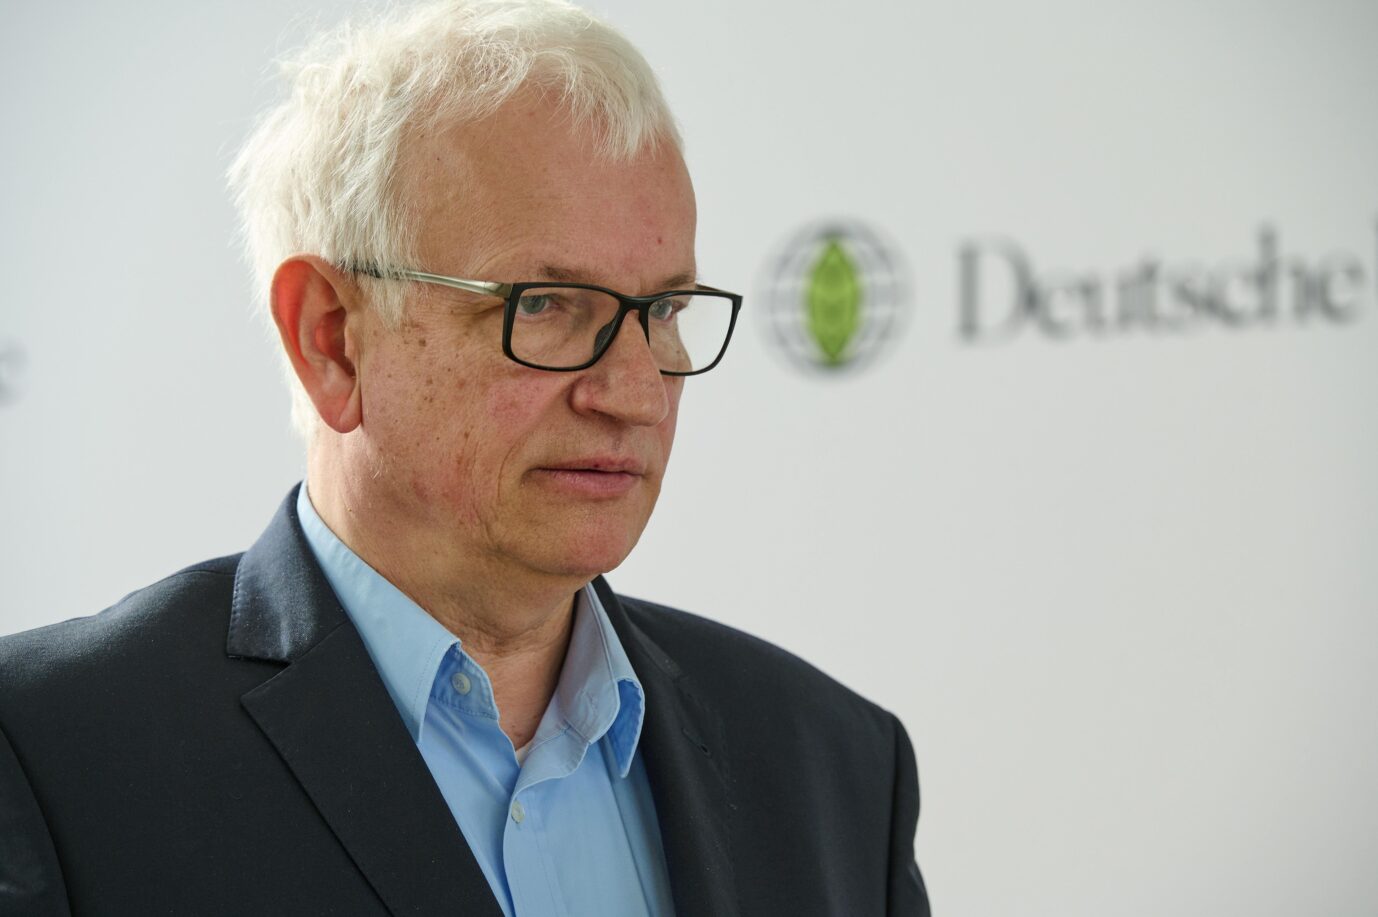 Der Hauptgeschäftsführer der Deutschen Umwelthilfe, Jürgen fordert zur Denunziation von Falschparkern auf.